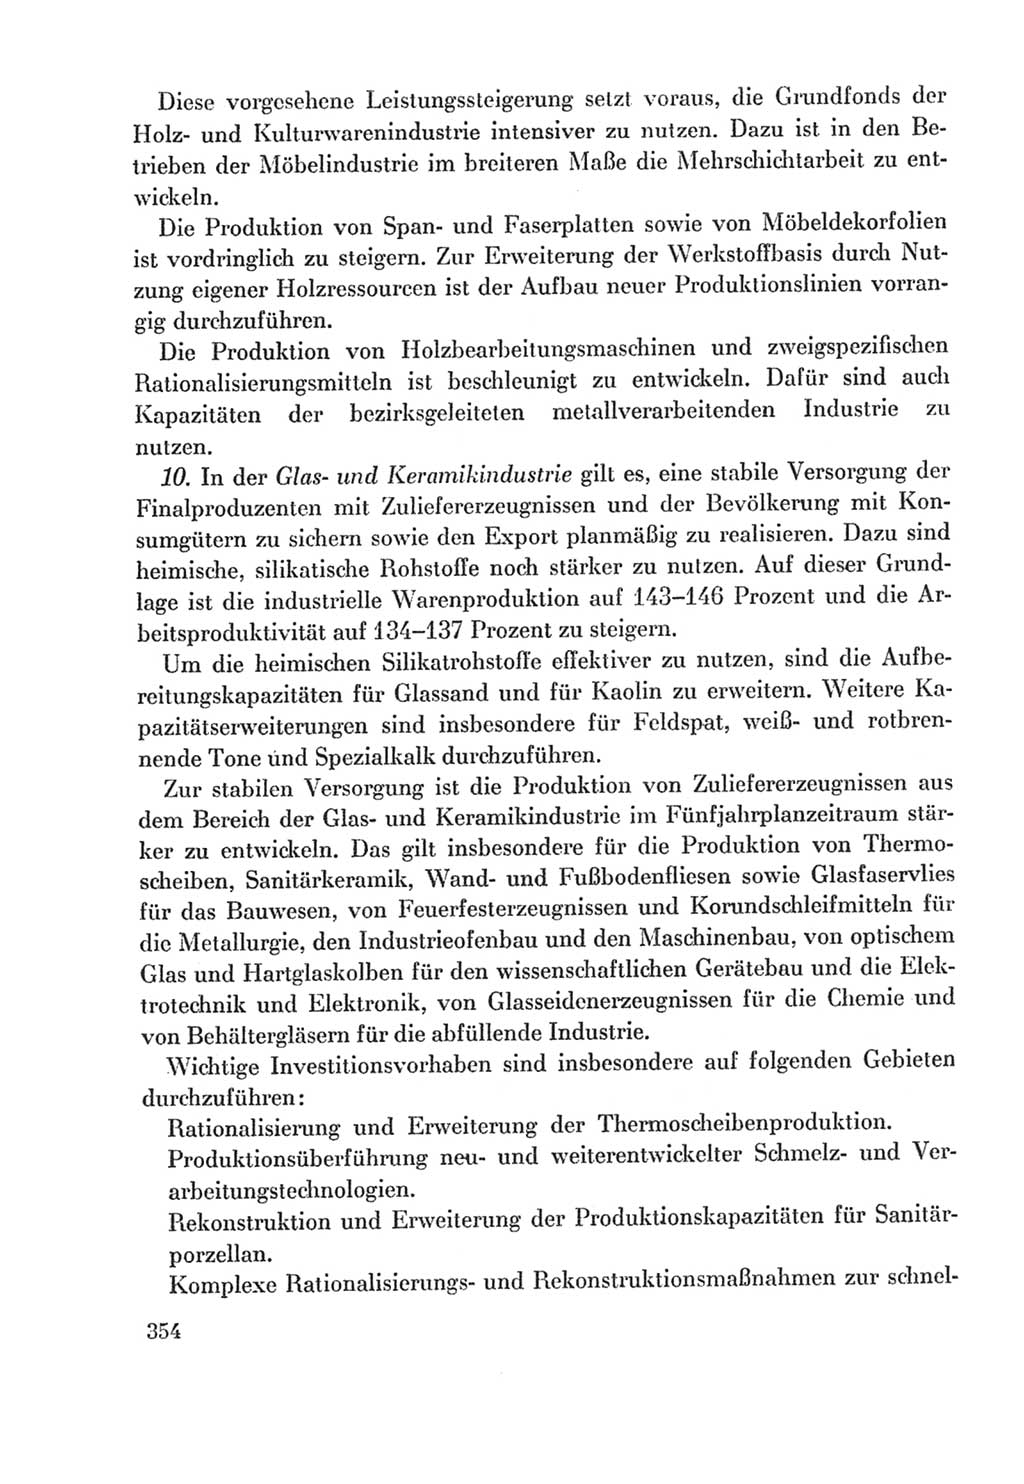 Protokoll der Verhandlungen des Ⅸ. Parteitages der Sozialistischen Einheitspartei Deutschlands (SED) [Deutsche Demokratische Republik (DDR)] 1976, Band 2, Seite 354 (Prot. Verh. Ⅸ. PT SED DDR 1976, Bd. 2, S. 354)